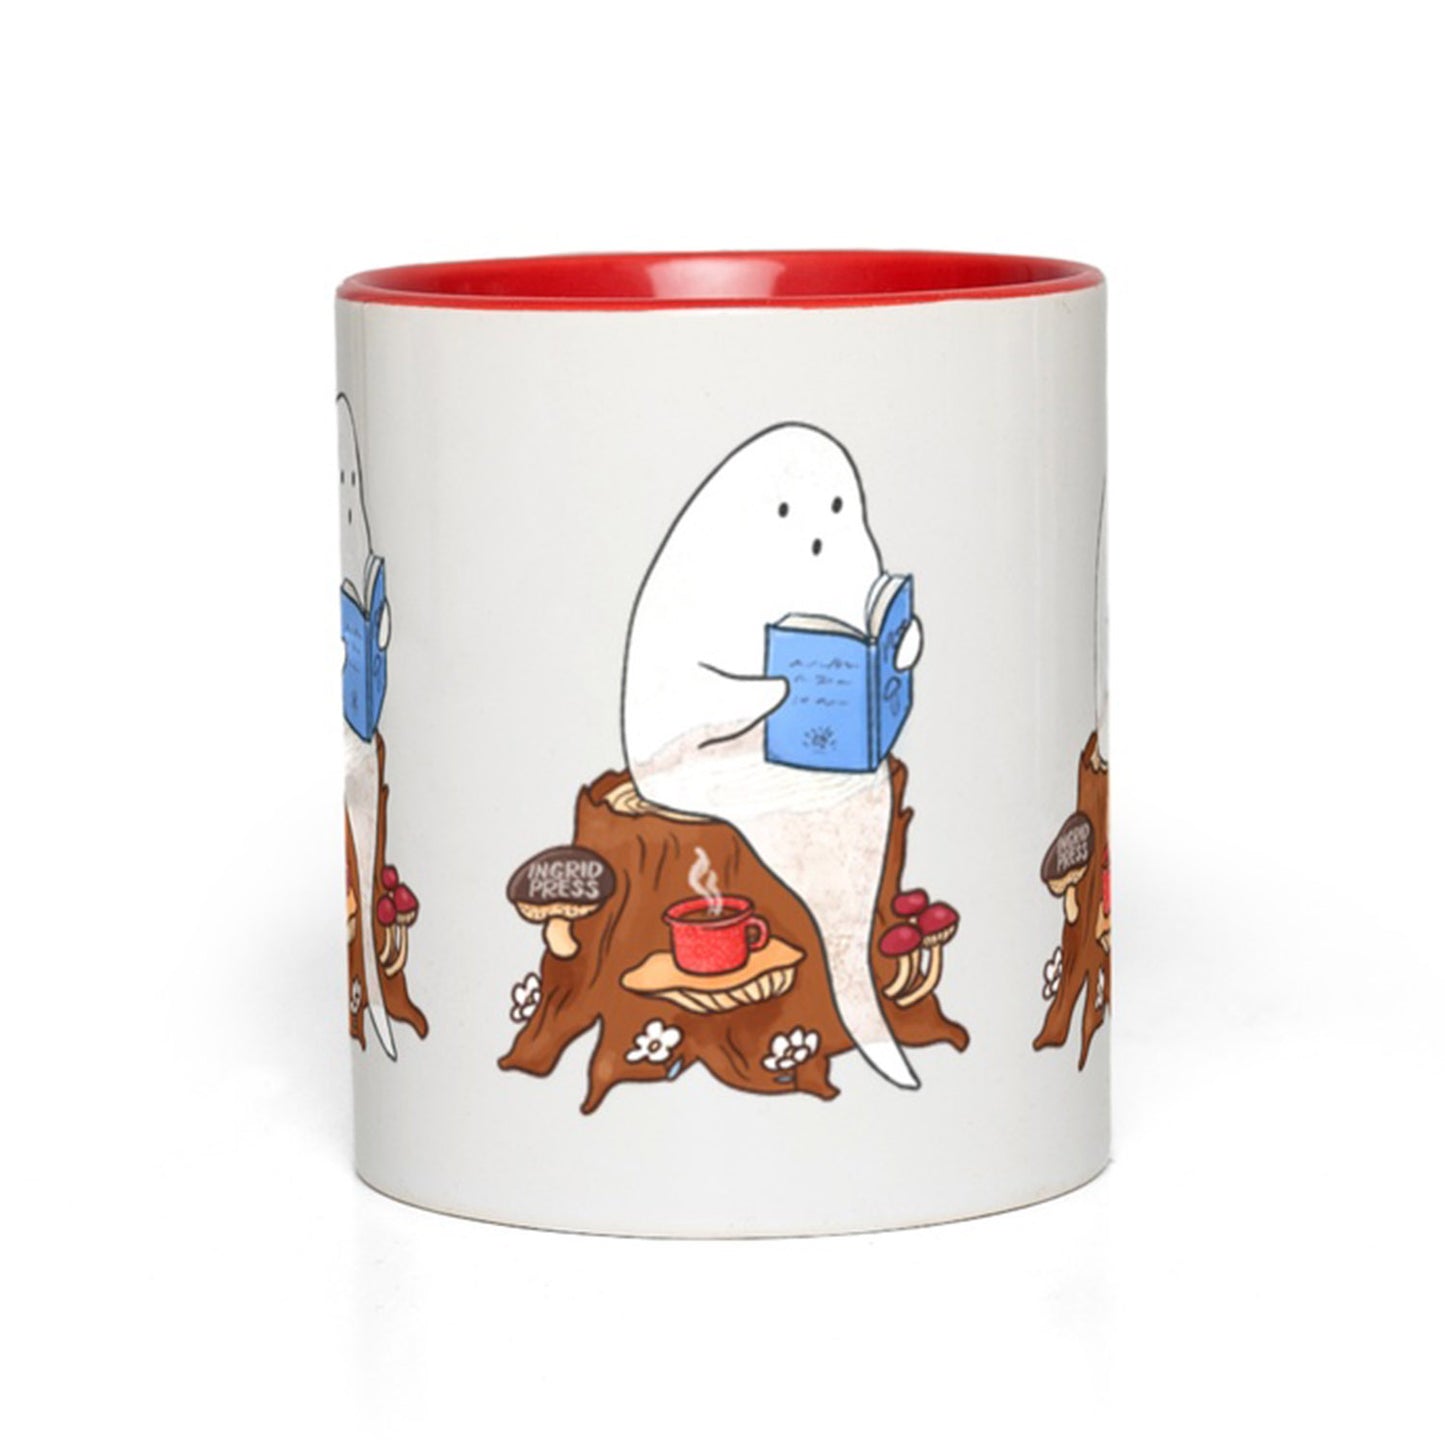 Spooky Stories Ceramic Mug